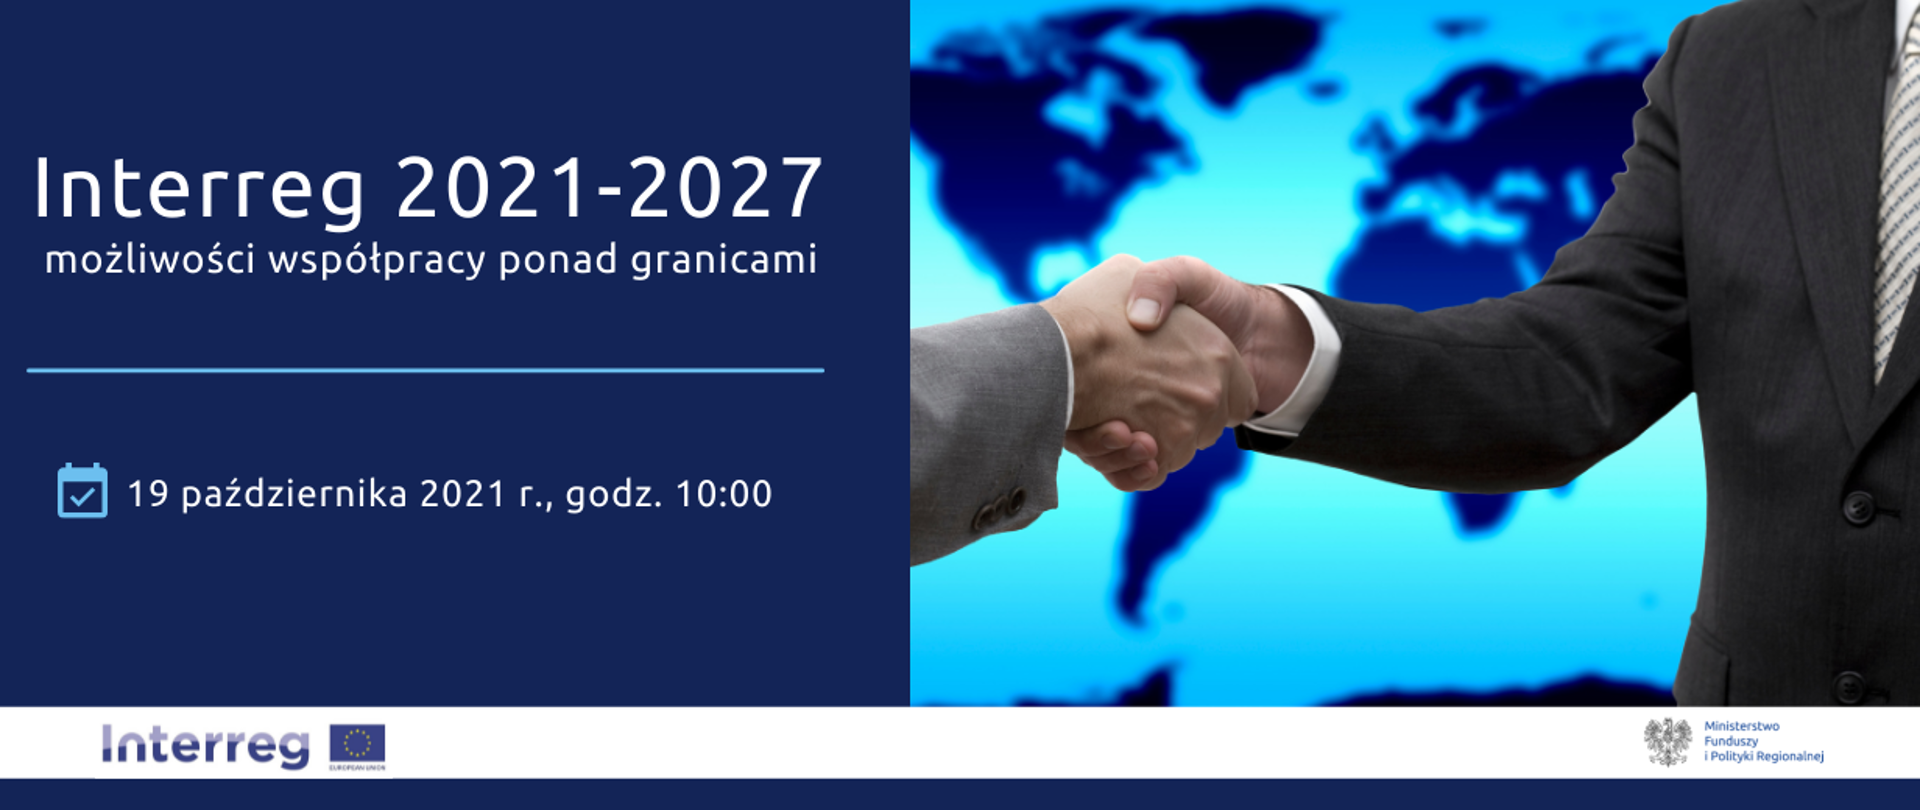 Po prawej zdjęcie uścisku rąk. Po lewej napis: "19 października 2021 r., godz. 10:00, Interreg 2021-2027 - możliwości współpracy ponad granicami"